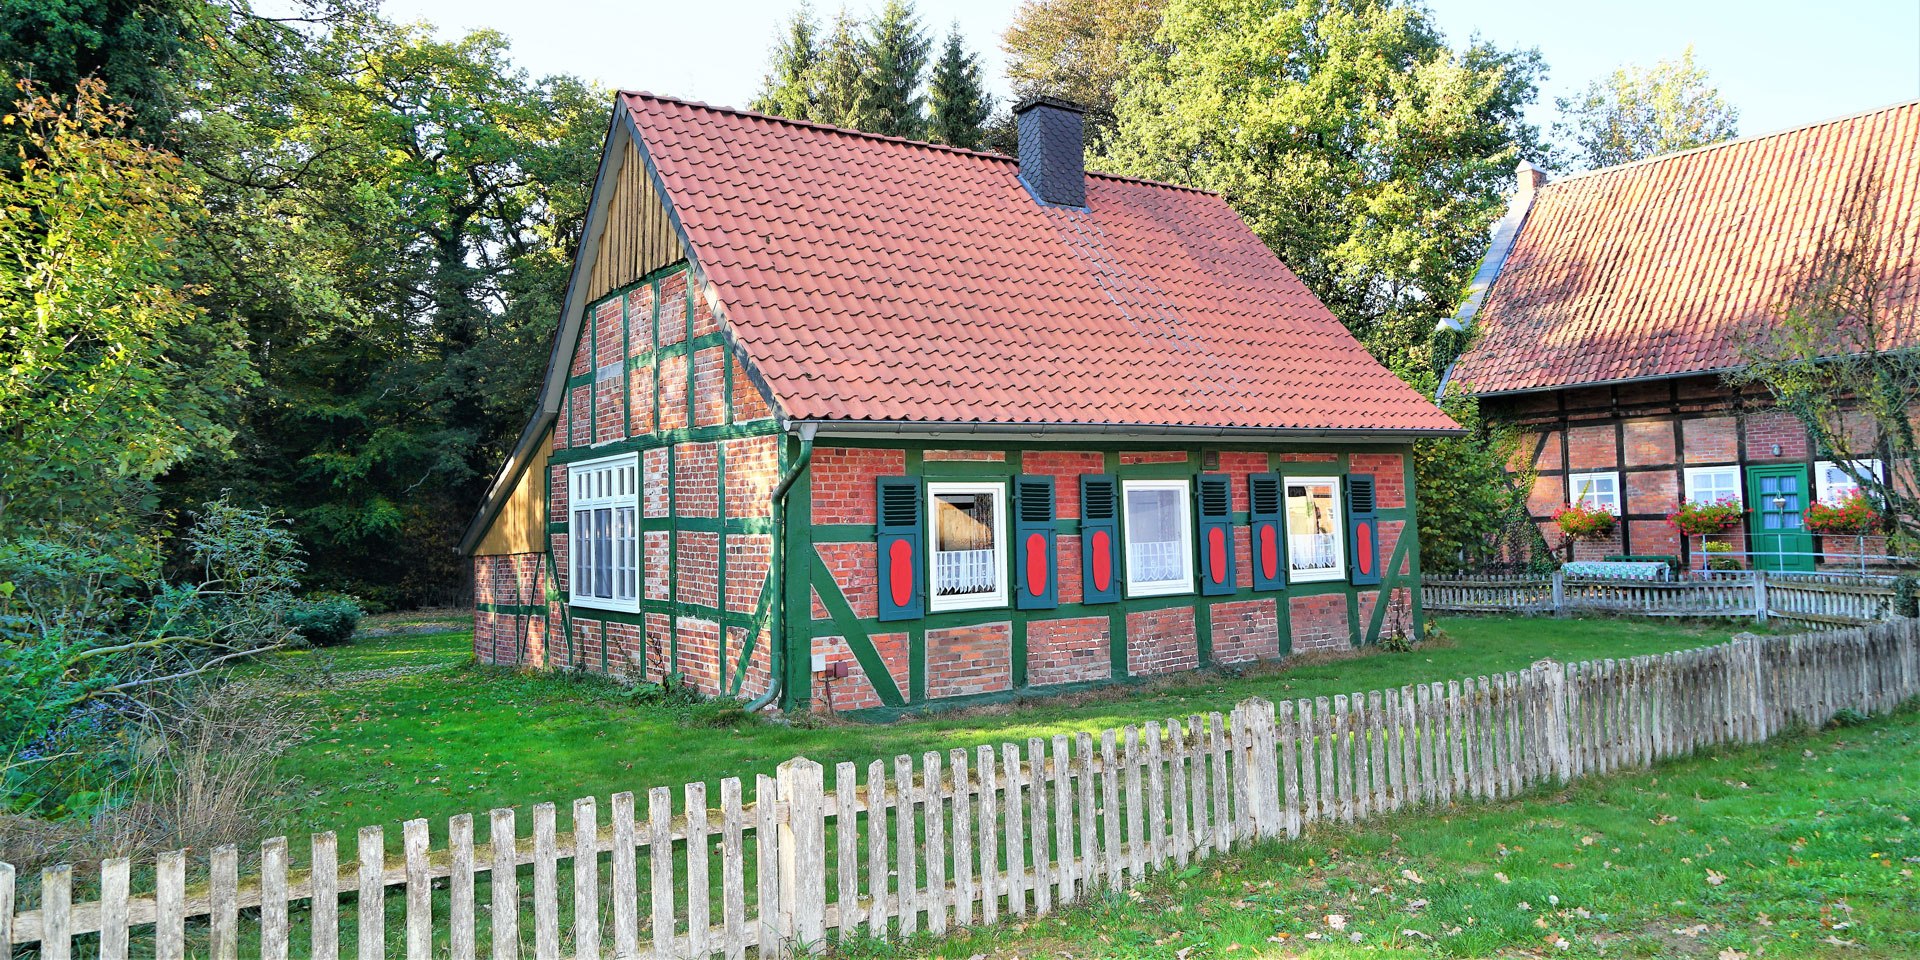 Denkmalgeschütztes ehemaliges Backhaus als Ferienhaus, © Meike Behrens Sandvoss/ Sandvoss